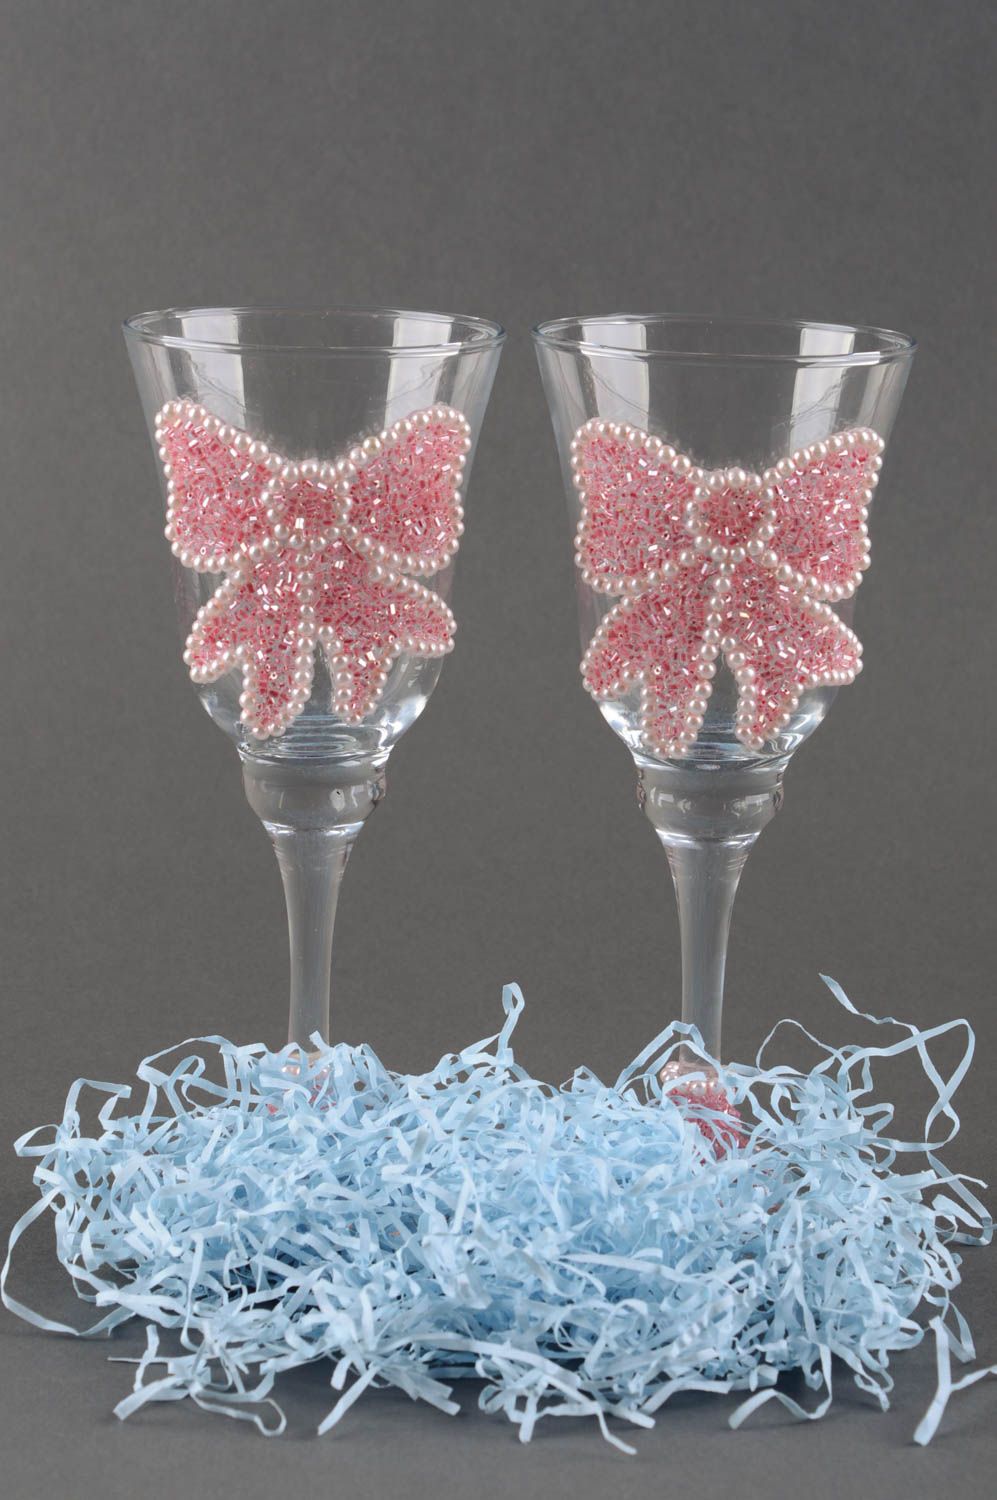 Handmade glasses designer glasses champagne glasses for wedding gift ideas photo 1